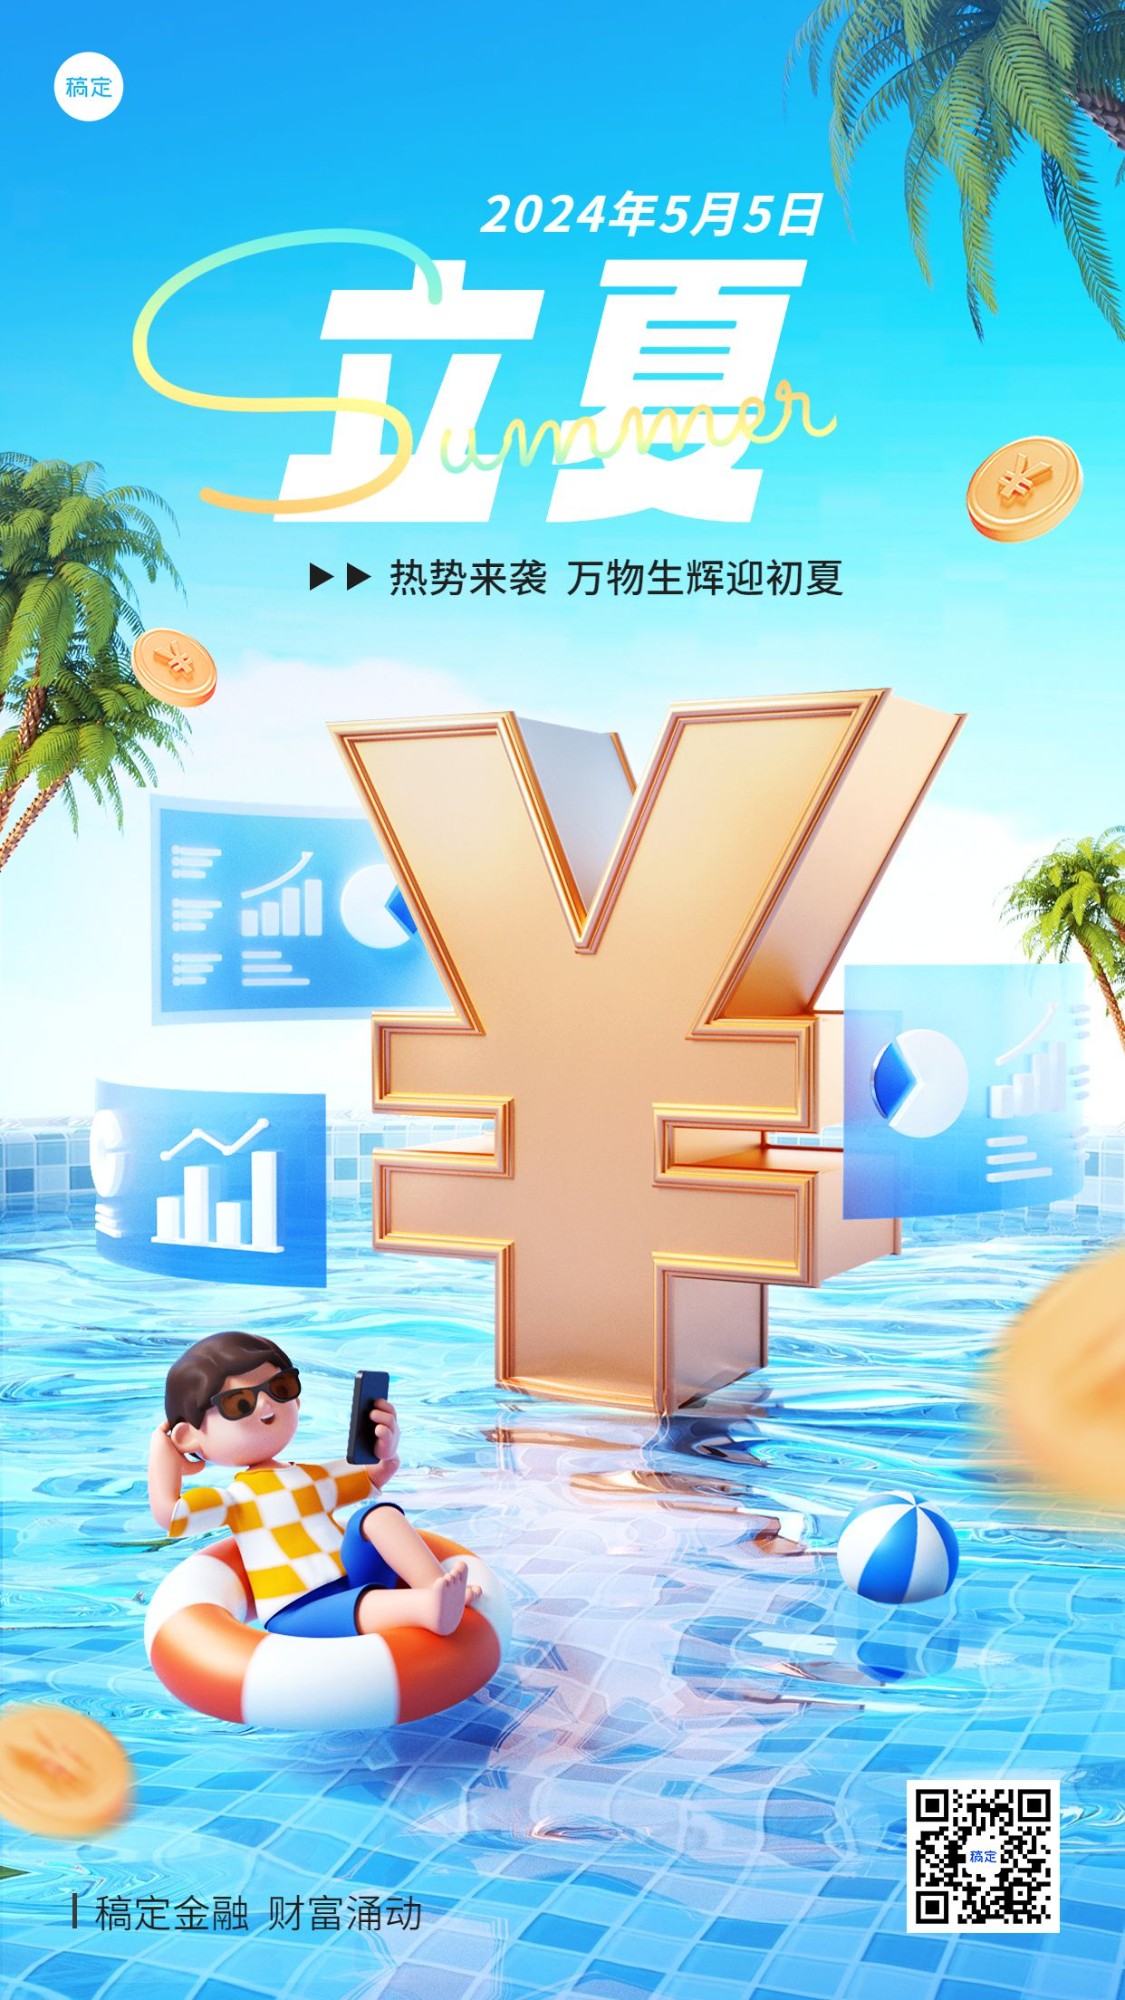 立夏金融保险节气祝福问候3D手机海报